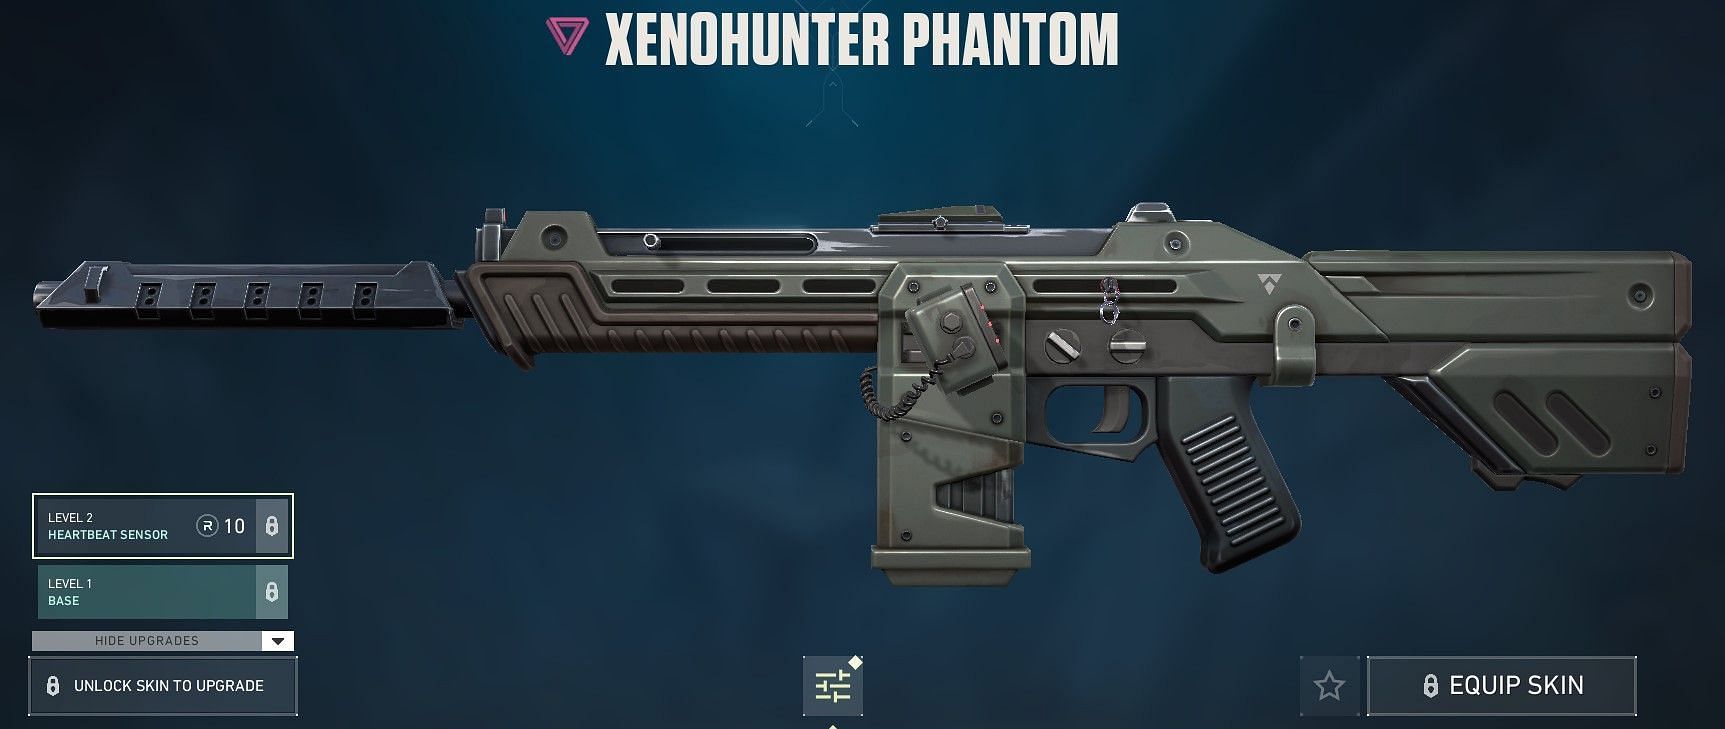 Xenohunter Phantom (Image via Riot Games)